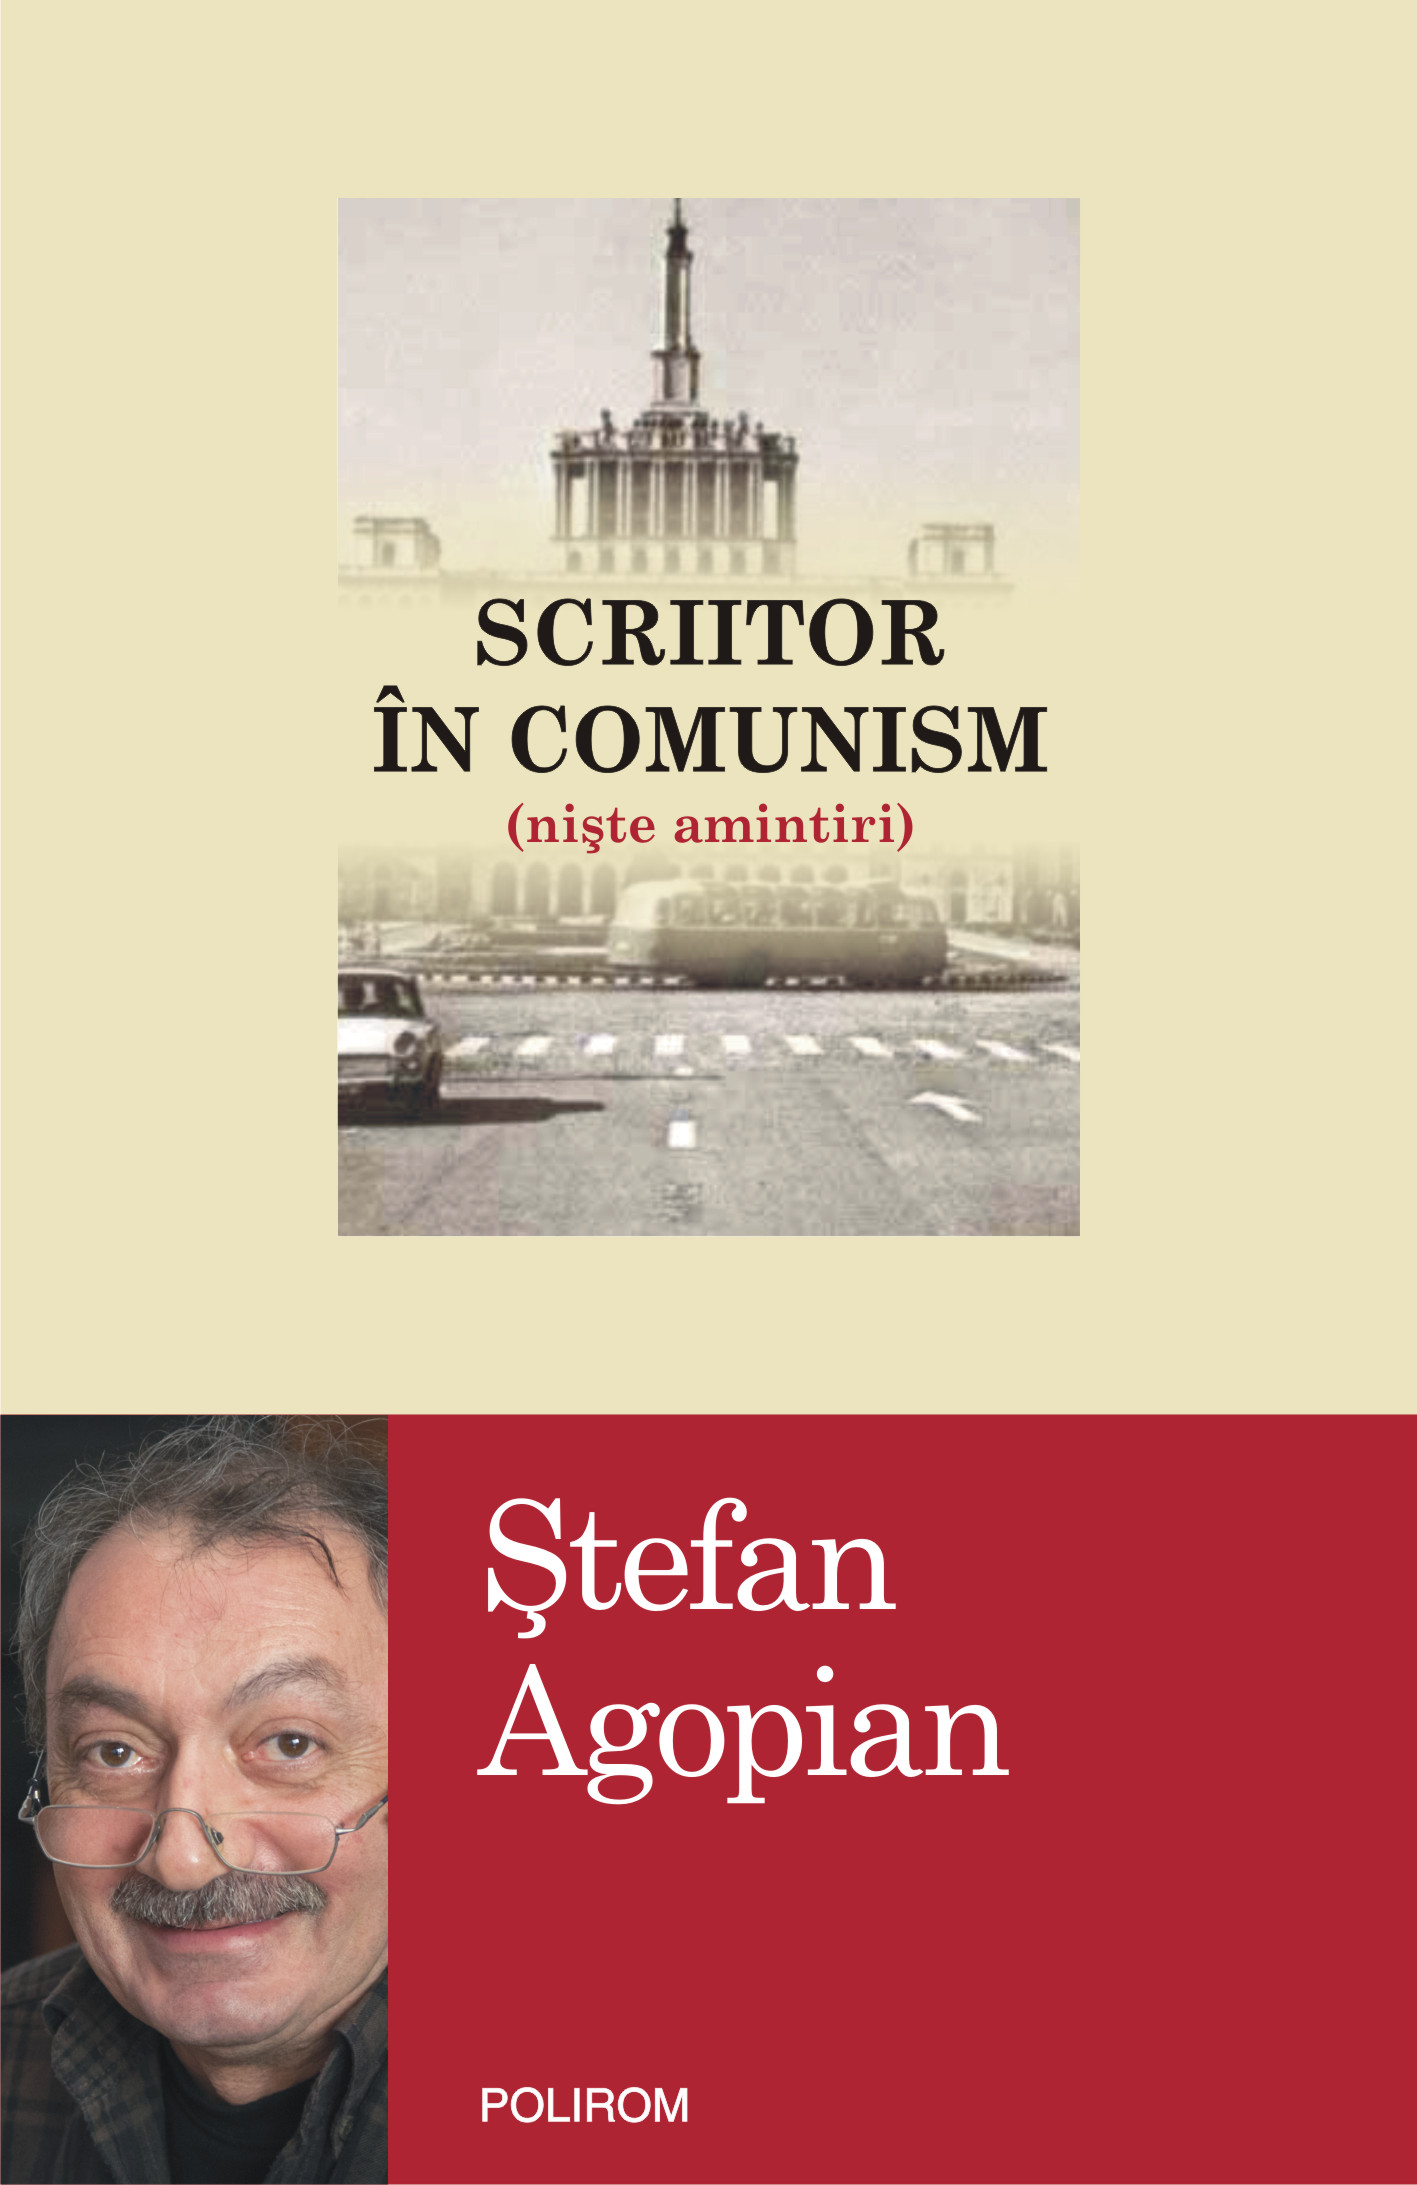 eBook Scriitor in comunism (niste amintiri) - stefan Agopian